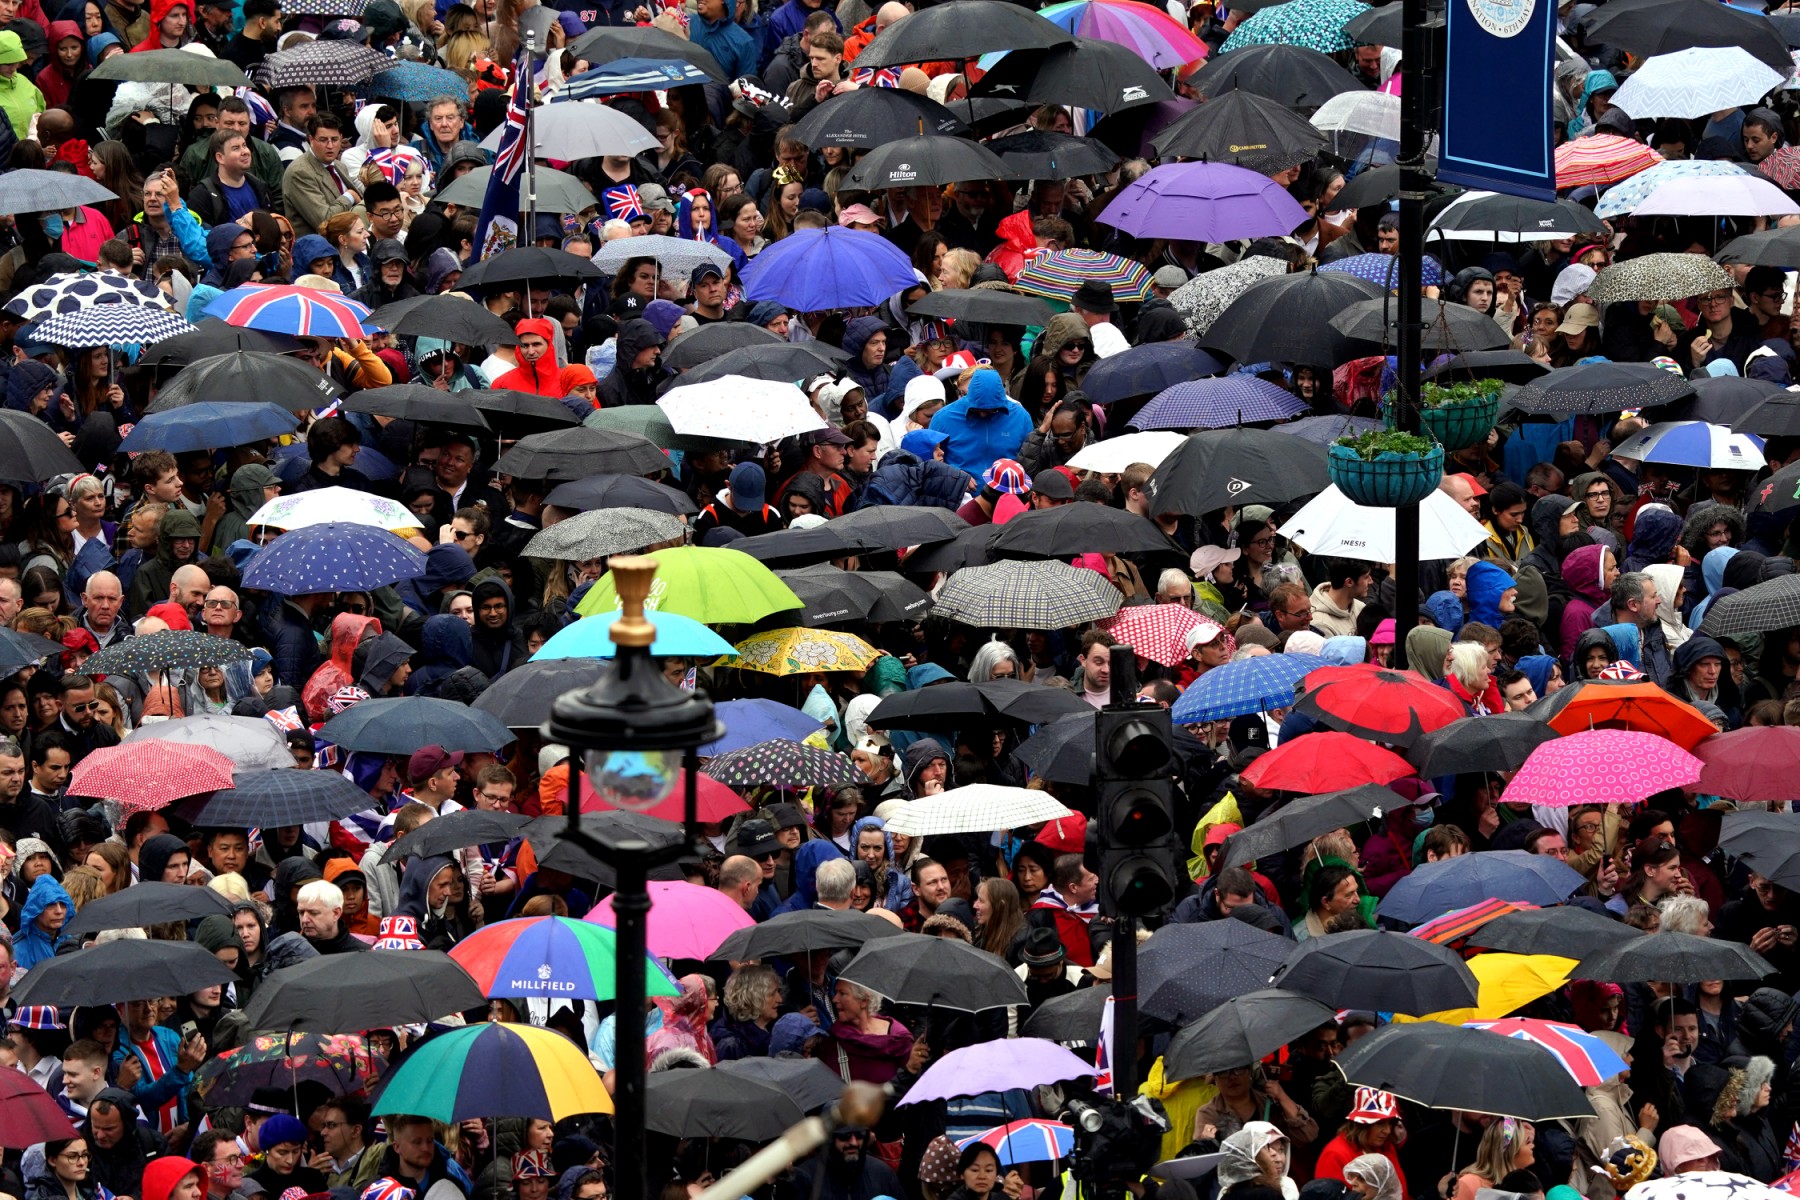 Des foules près de Trafalgar Square ouvrent leurs parapluies avant la cérémonie de couronnement du roi Charles III et de Camilla, reine consort de Grande-Bretagne dans le centre de Londres le 6 mai 2023 (Photo, AFP).